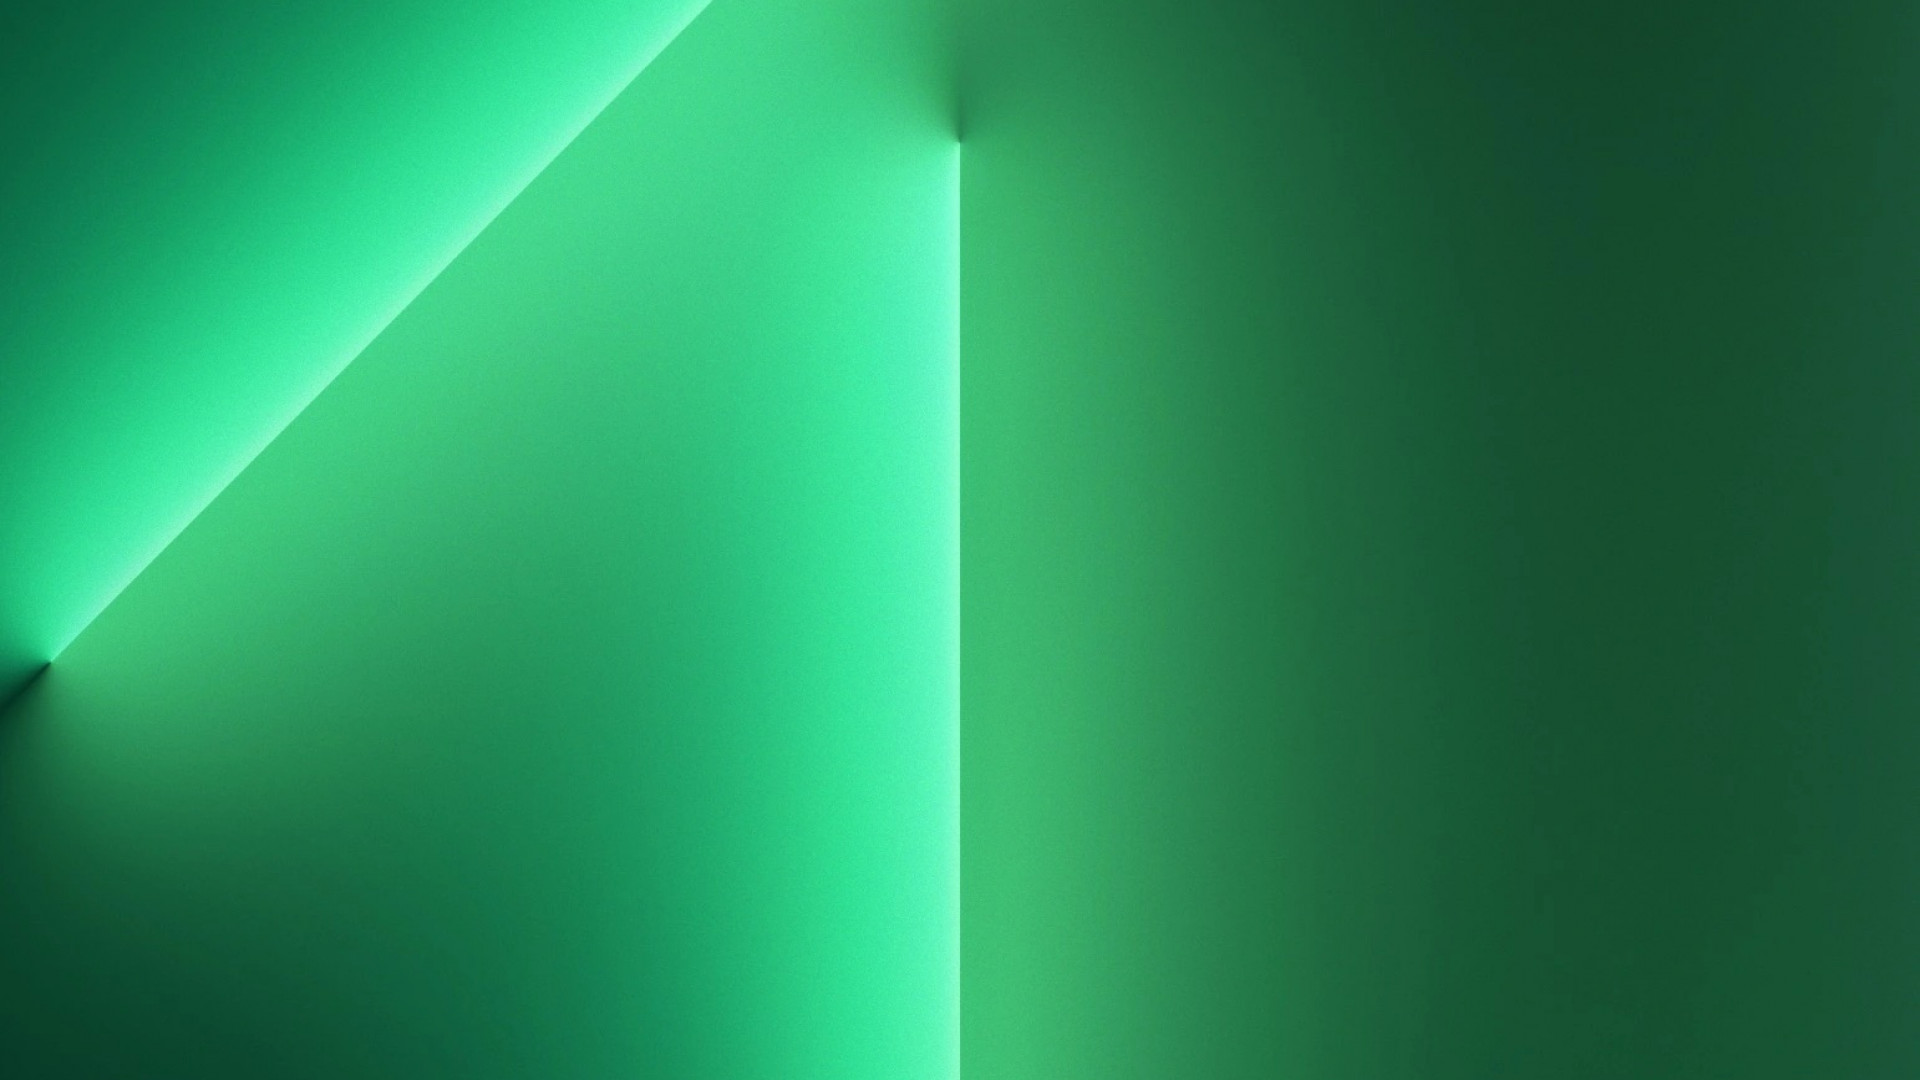 Làm mới điện thoại của bạn với hình nền iPhone 13 Pro Alpine Green đẹp mắt và tinh tế. Một món quà hoàn hảo để thể hiện phong cách của bạn cùng với sự kết hợp hoàn hảo của màu xanh tươi mát và độ sắc nét tuyệt đối.